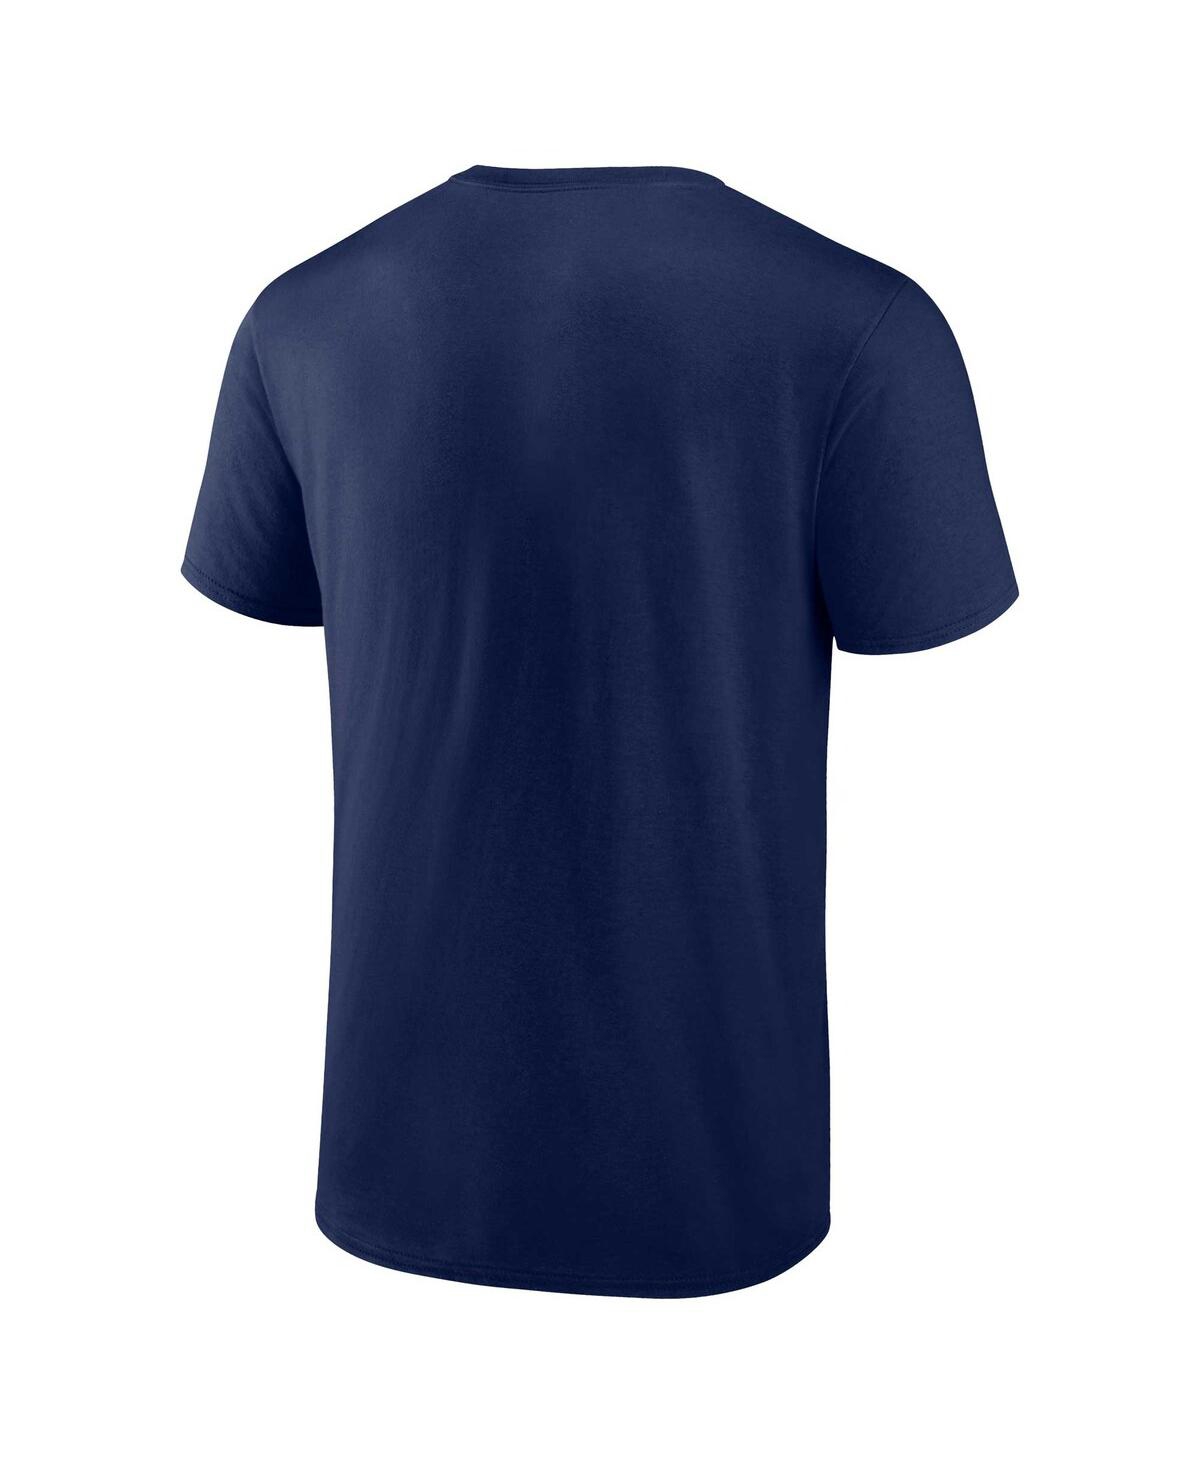 Shop Fanatics Men's  Navy New York Yankees Second Wind T-shirt